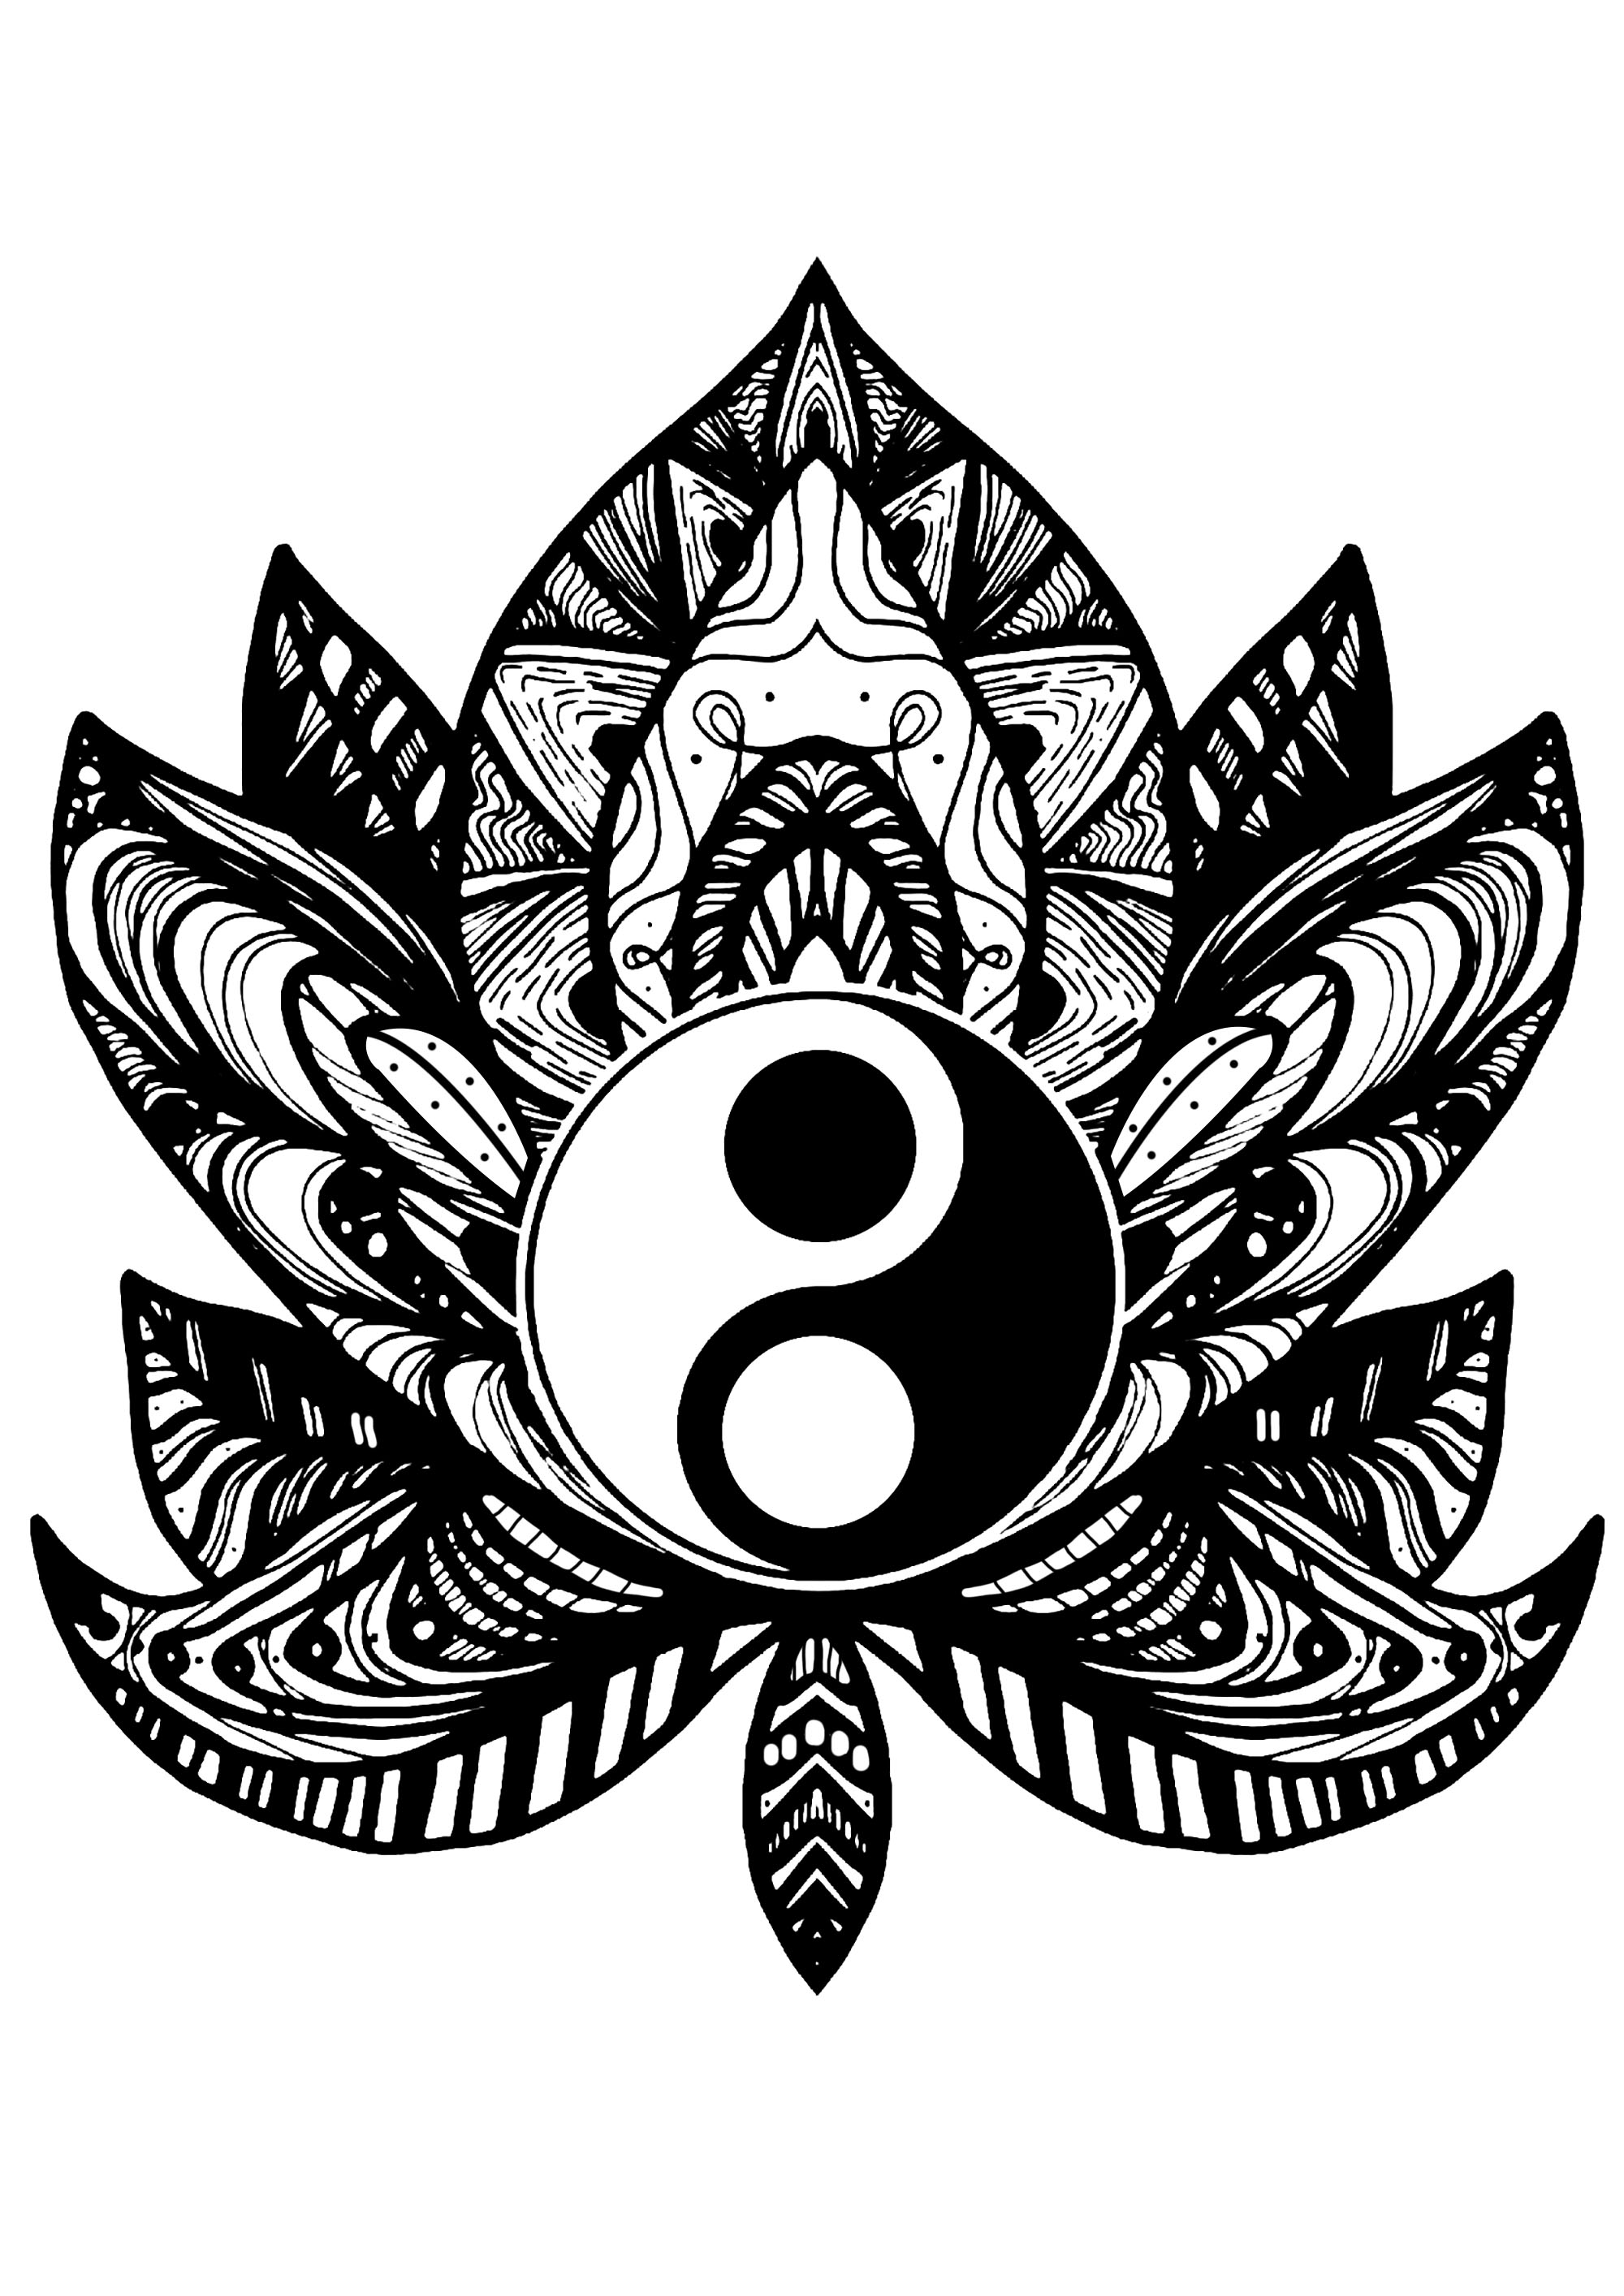 Entspannen Sie sich mit dieser Malvorlage einer seltsamen Blume mit einem Yin & Yang-Symbol in ihrer Mitte